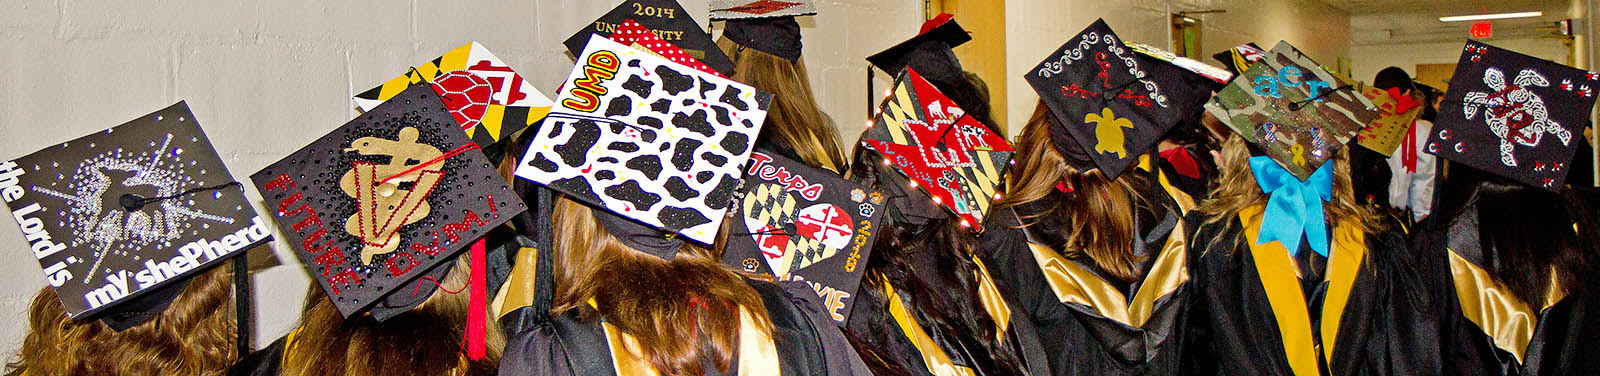 ANSC graduates hats